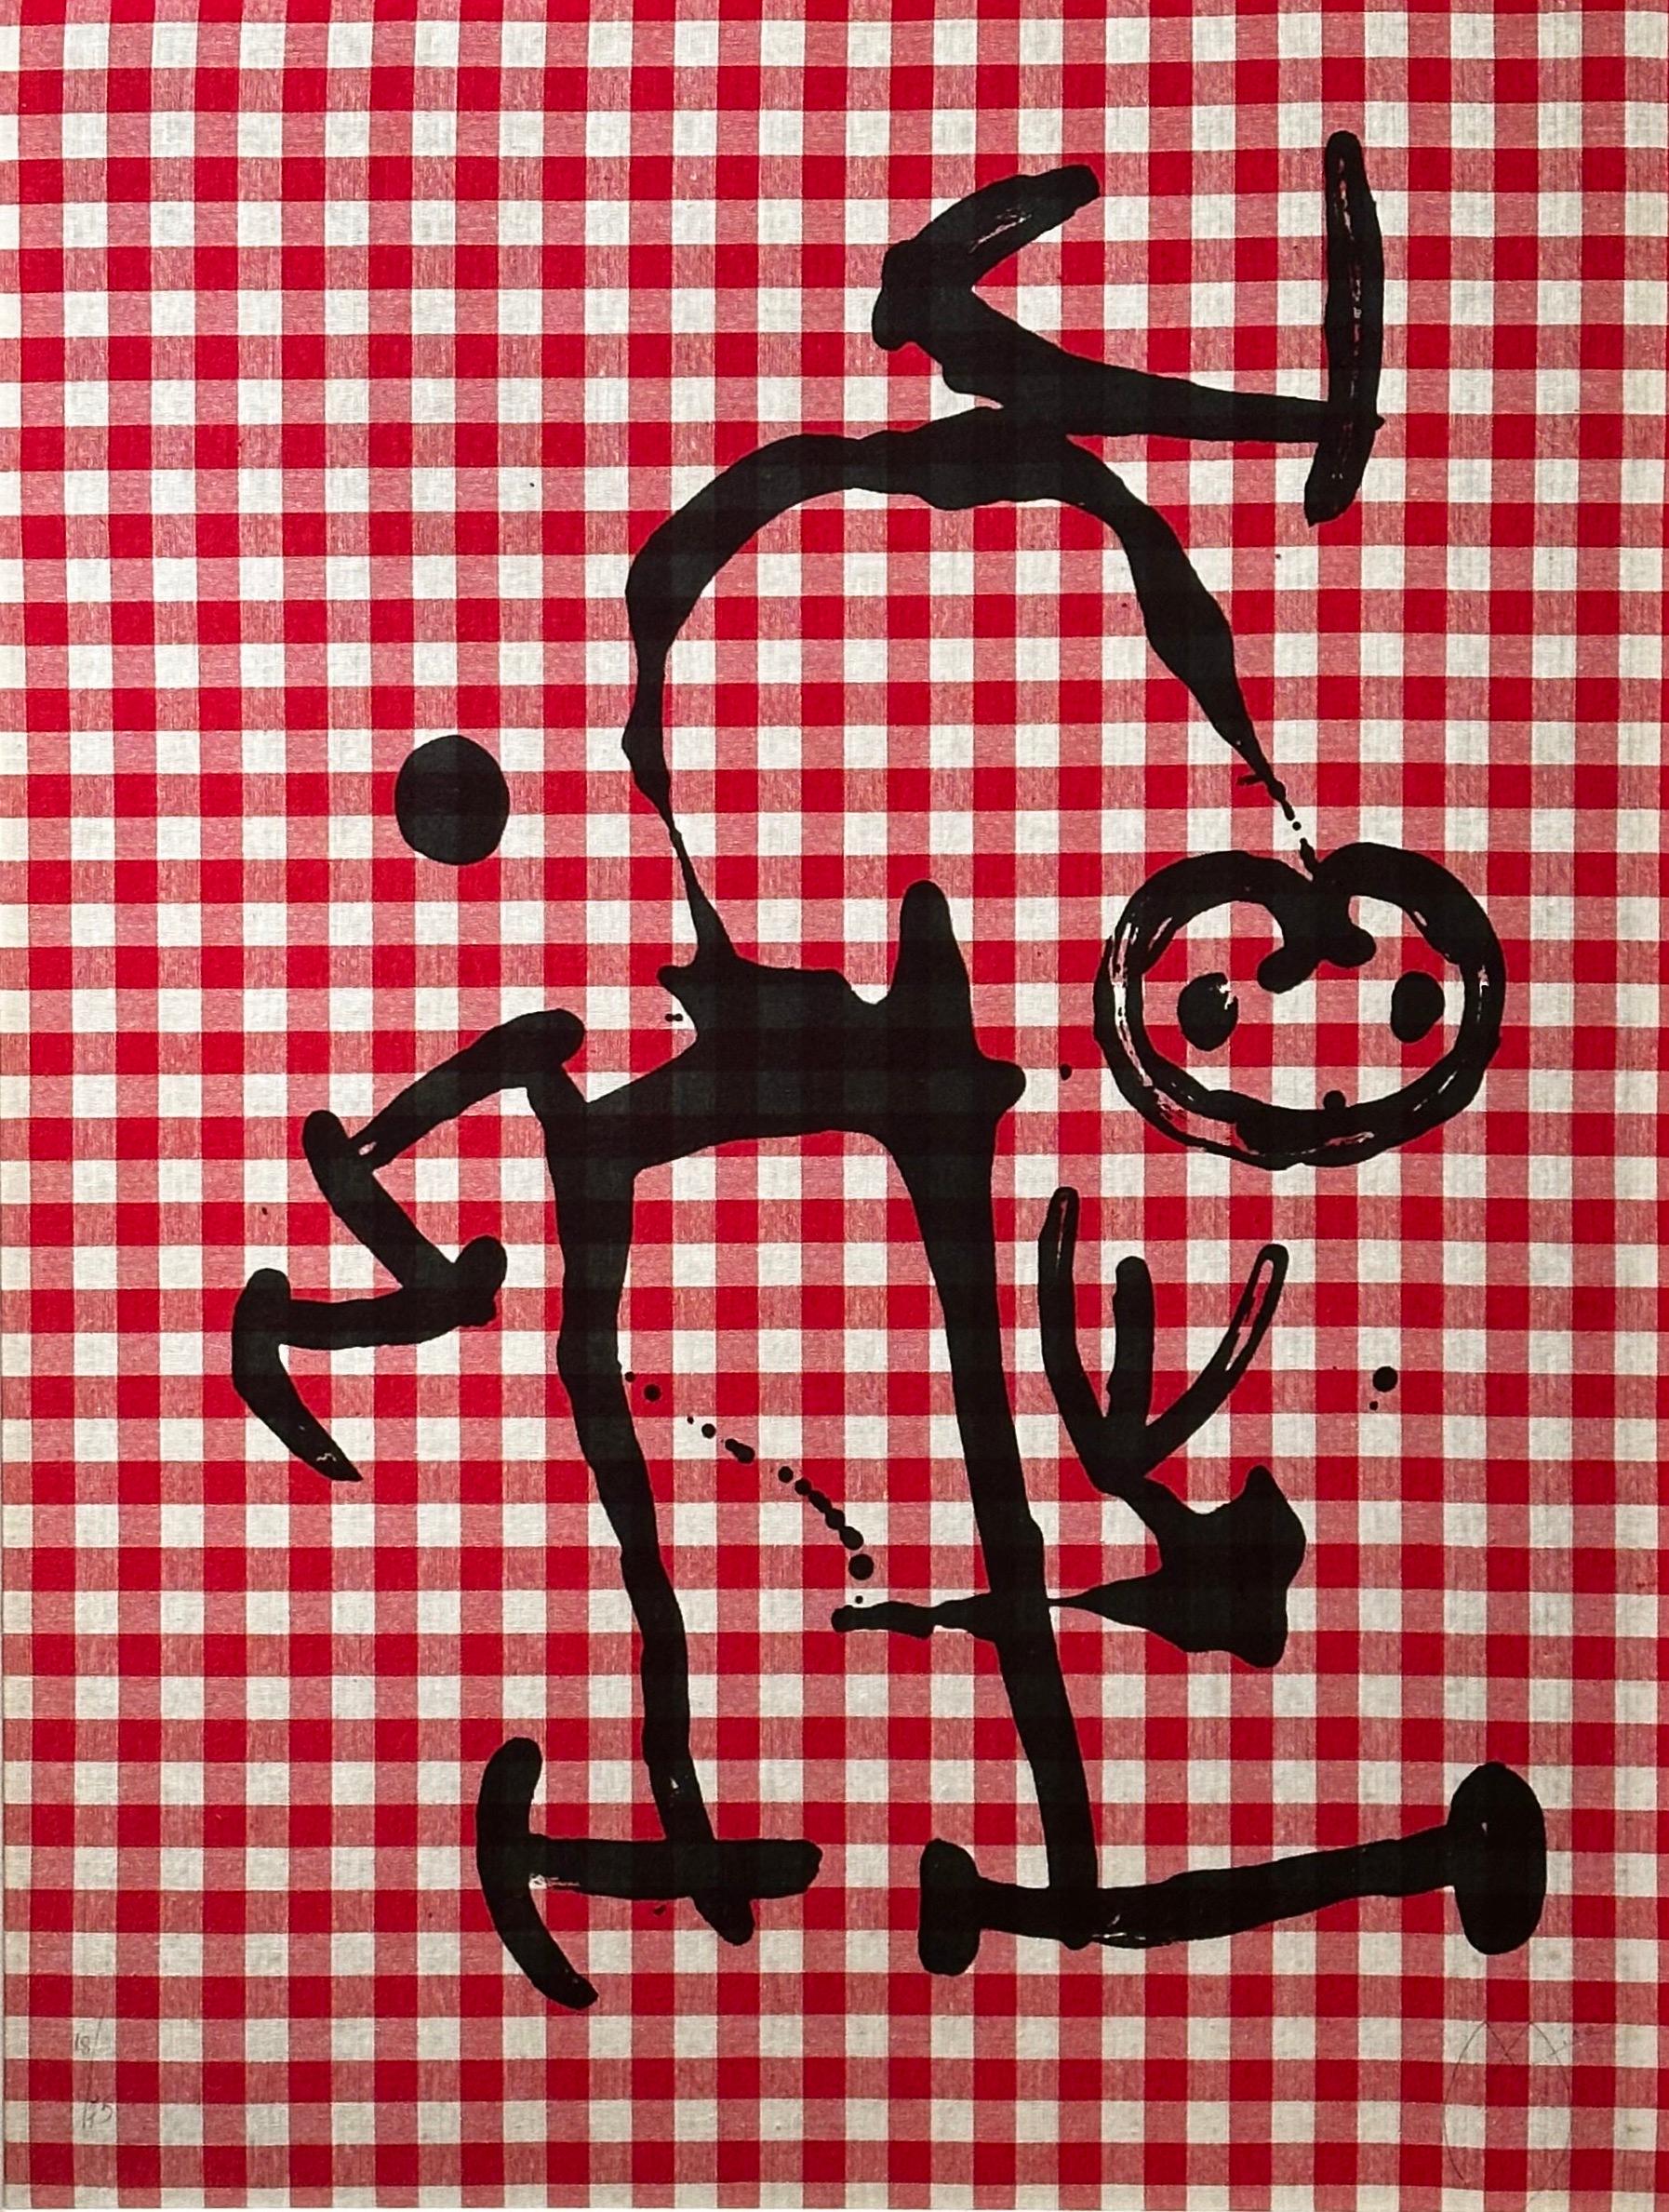 L'Illettré aux Carreaux Rouges - Print by Joan Miró